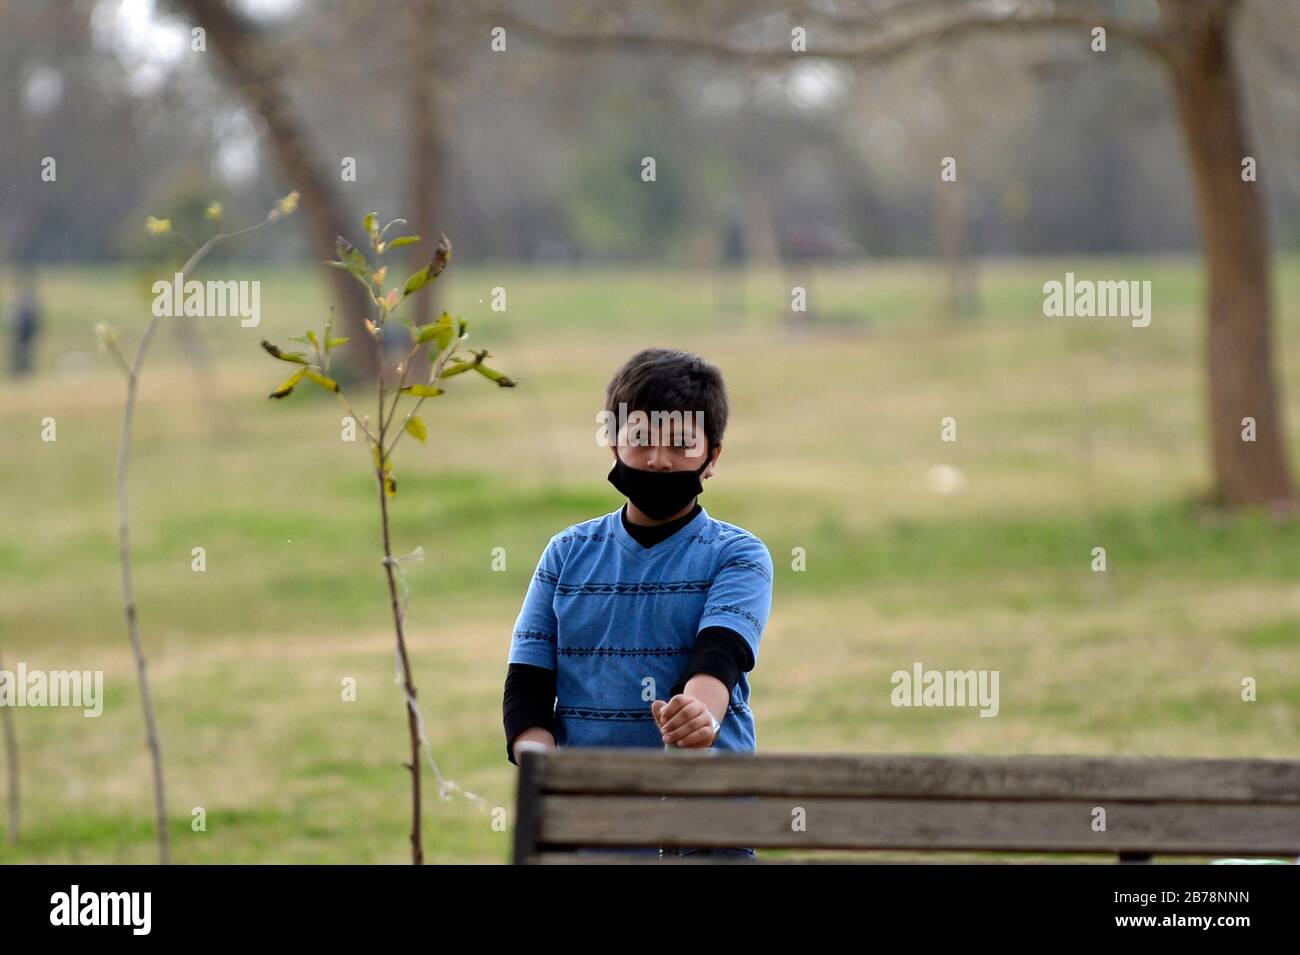 (200314) -- ISLAMABAD, le 14 mars 2020 (Xinhua) -- un garçon portant un masque facial est vu dans un parc public d'Islamabad, capitale du Pakistan, le 14 mars 2020. Le gouvernement du Pakistan a annoncé de mettre à niveau ses mesures contre COVID-19 dans tout le pays après que 28 personnes ont testé le virus positif au cours des 17 derniers jours, a déclaré l'adjoint spécial au Premier ministre de la Santé Zafar Mirza aux médias ici vendredi soir. Le pays a interdit toutes sortes de rassemblements publics, y compris les festivals sportifs et culturels, les rassemblements récréatifs dans les cinémas et les théâtres, les cérémonies de mariage dans les salles ou les salles ouvertes Banque D'Images